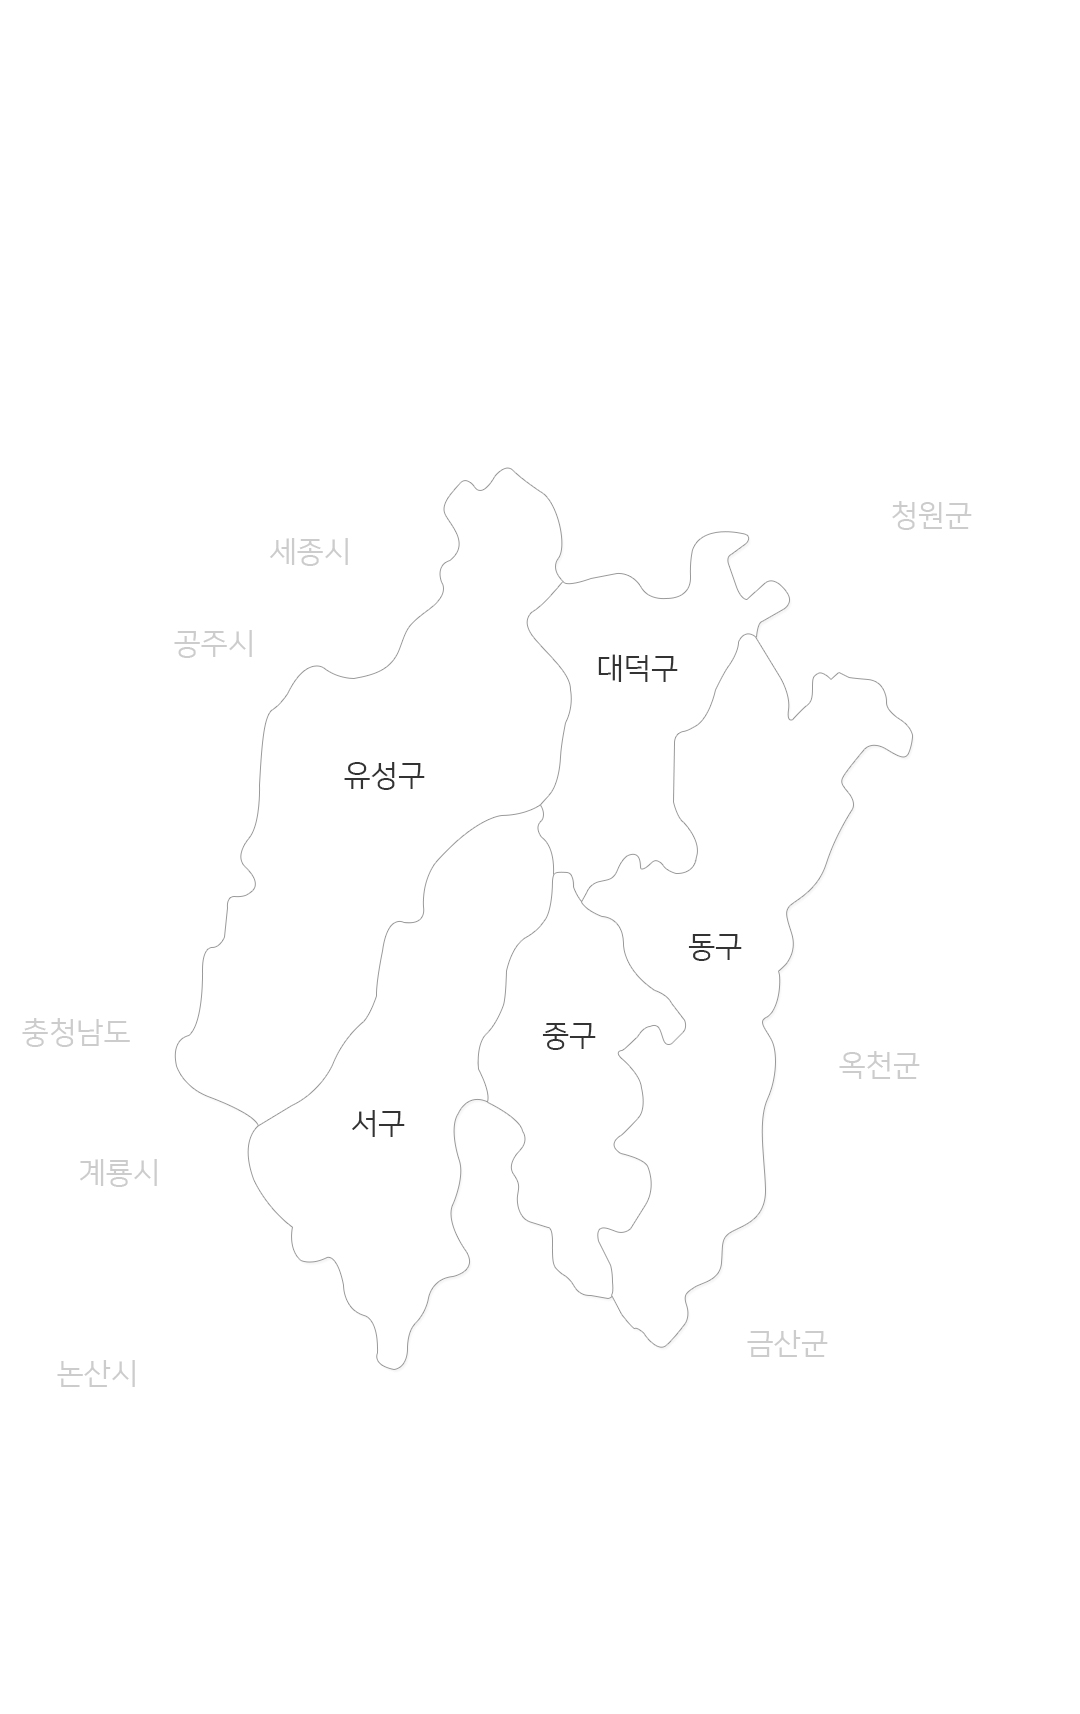 대전지역 지도